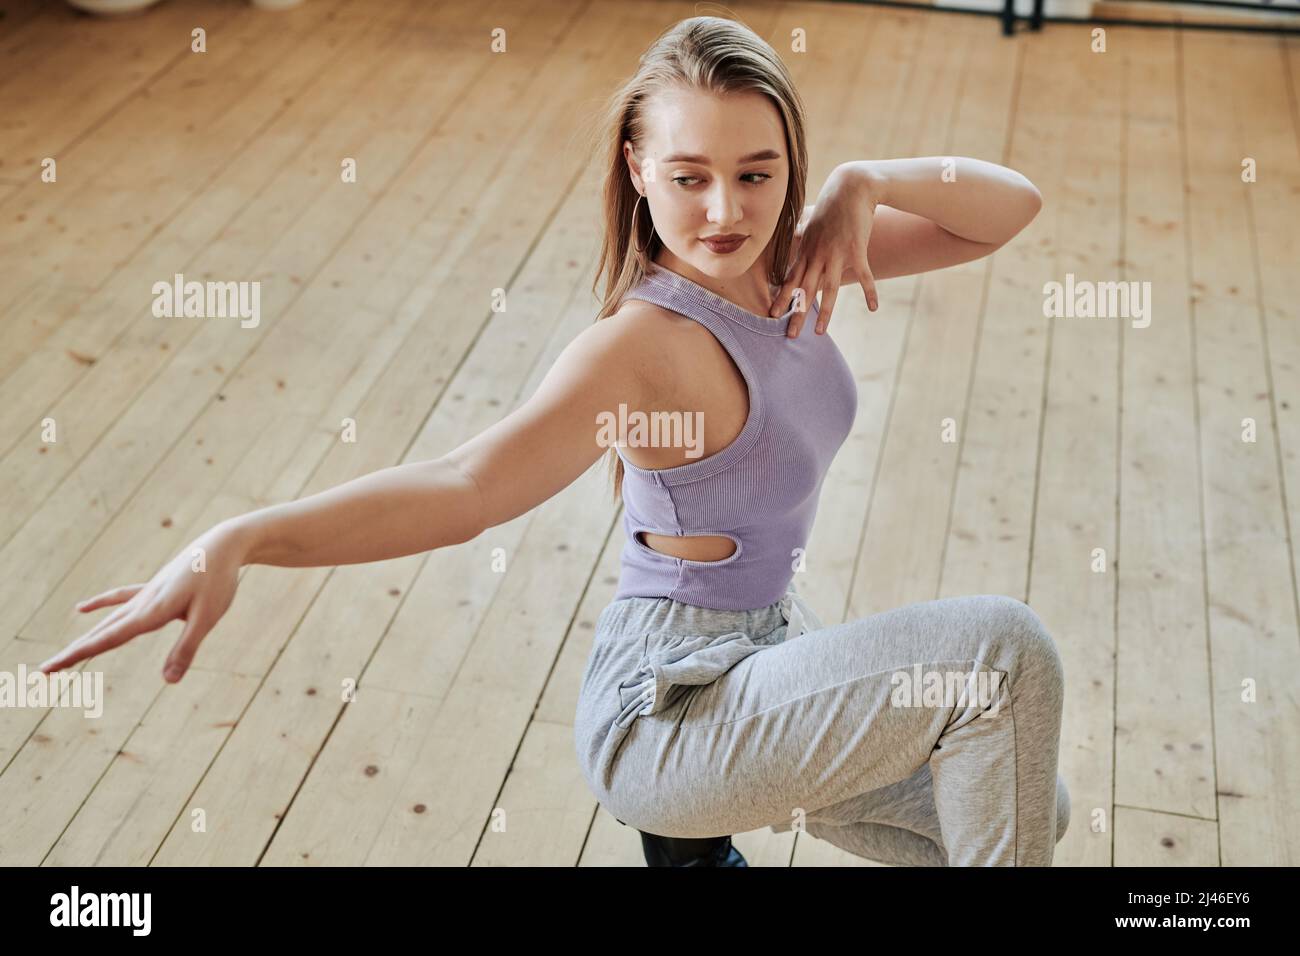 Liebenswürdiges Teenager-Mädchen in aktivem Ausstreckarm während der Ausübung während Mode Tanz-Training auf Holzboden des modernen Studios Stockfoto